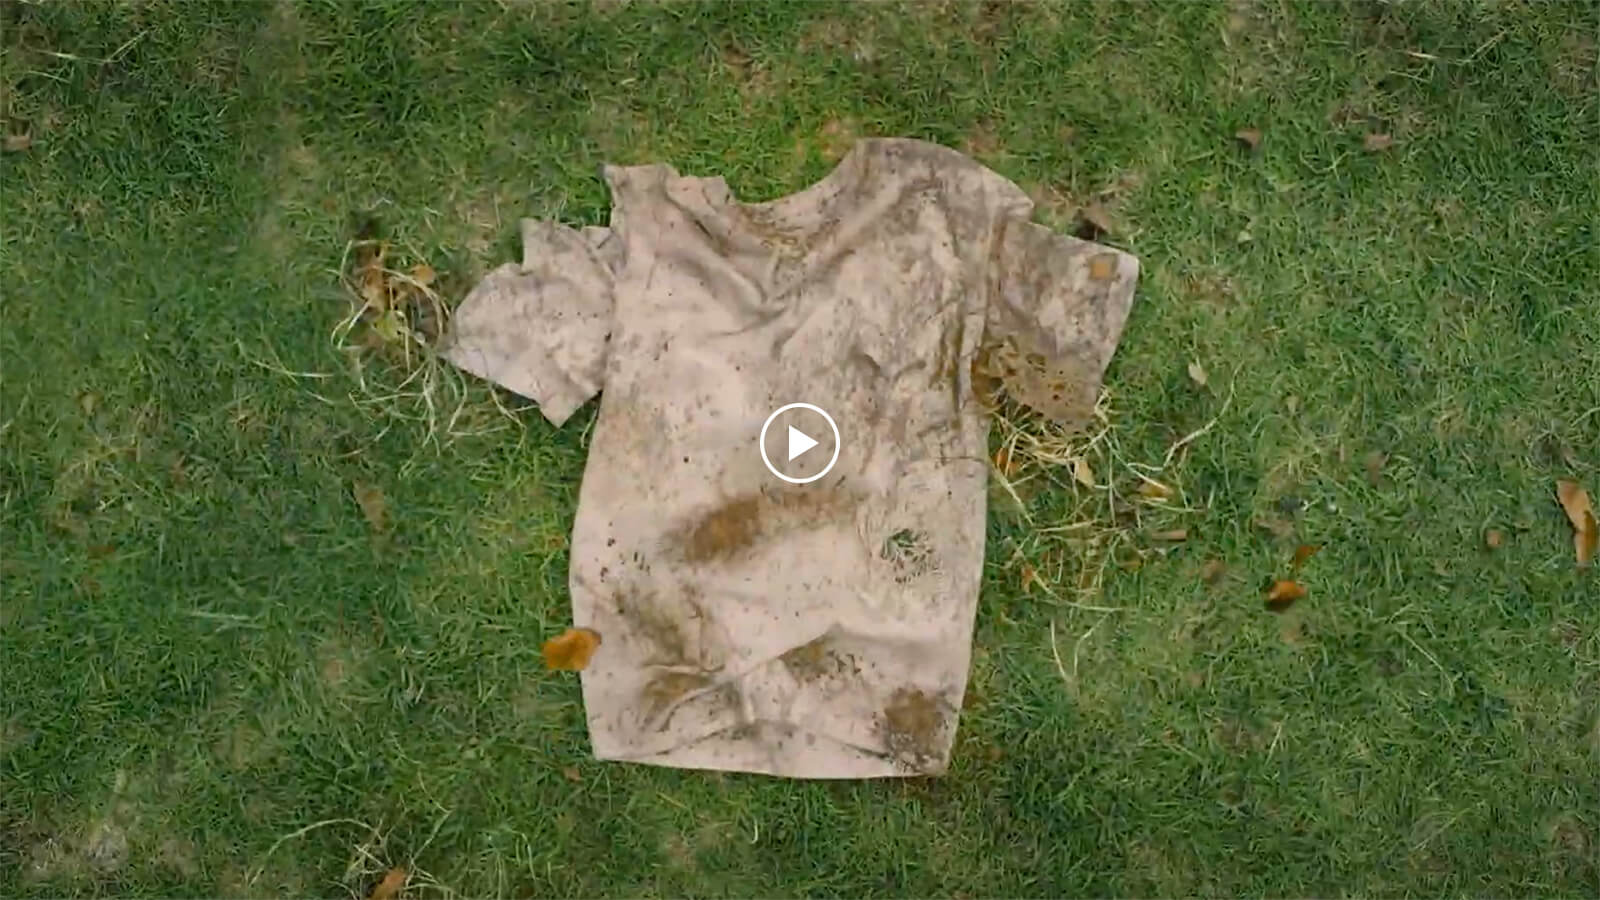 Pikkukuva videosta, jossa likainen ja epämuodostunut t-paita on maassa.